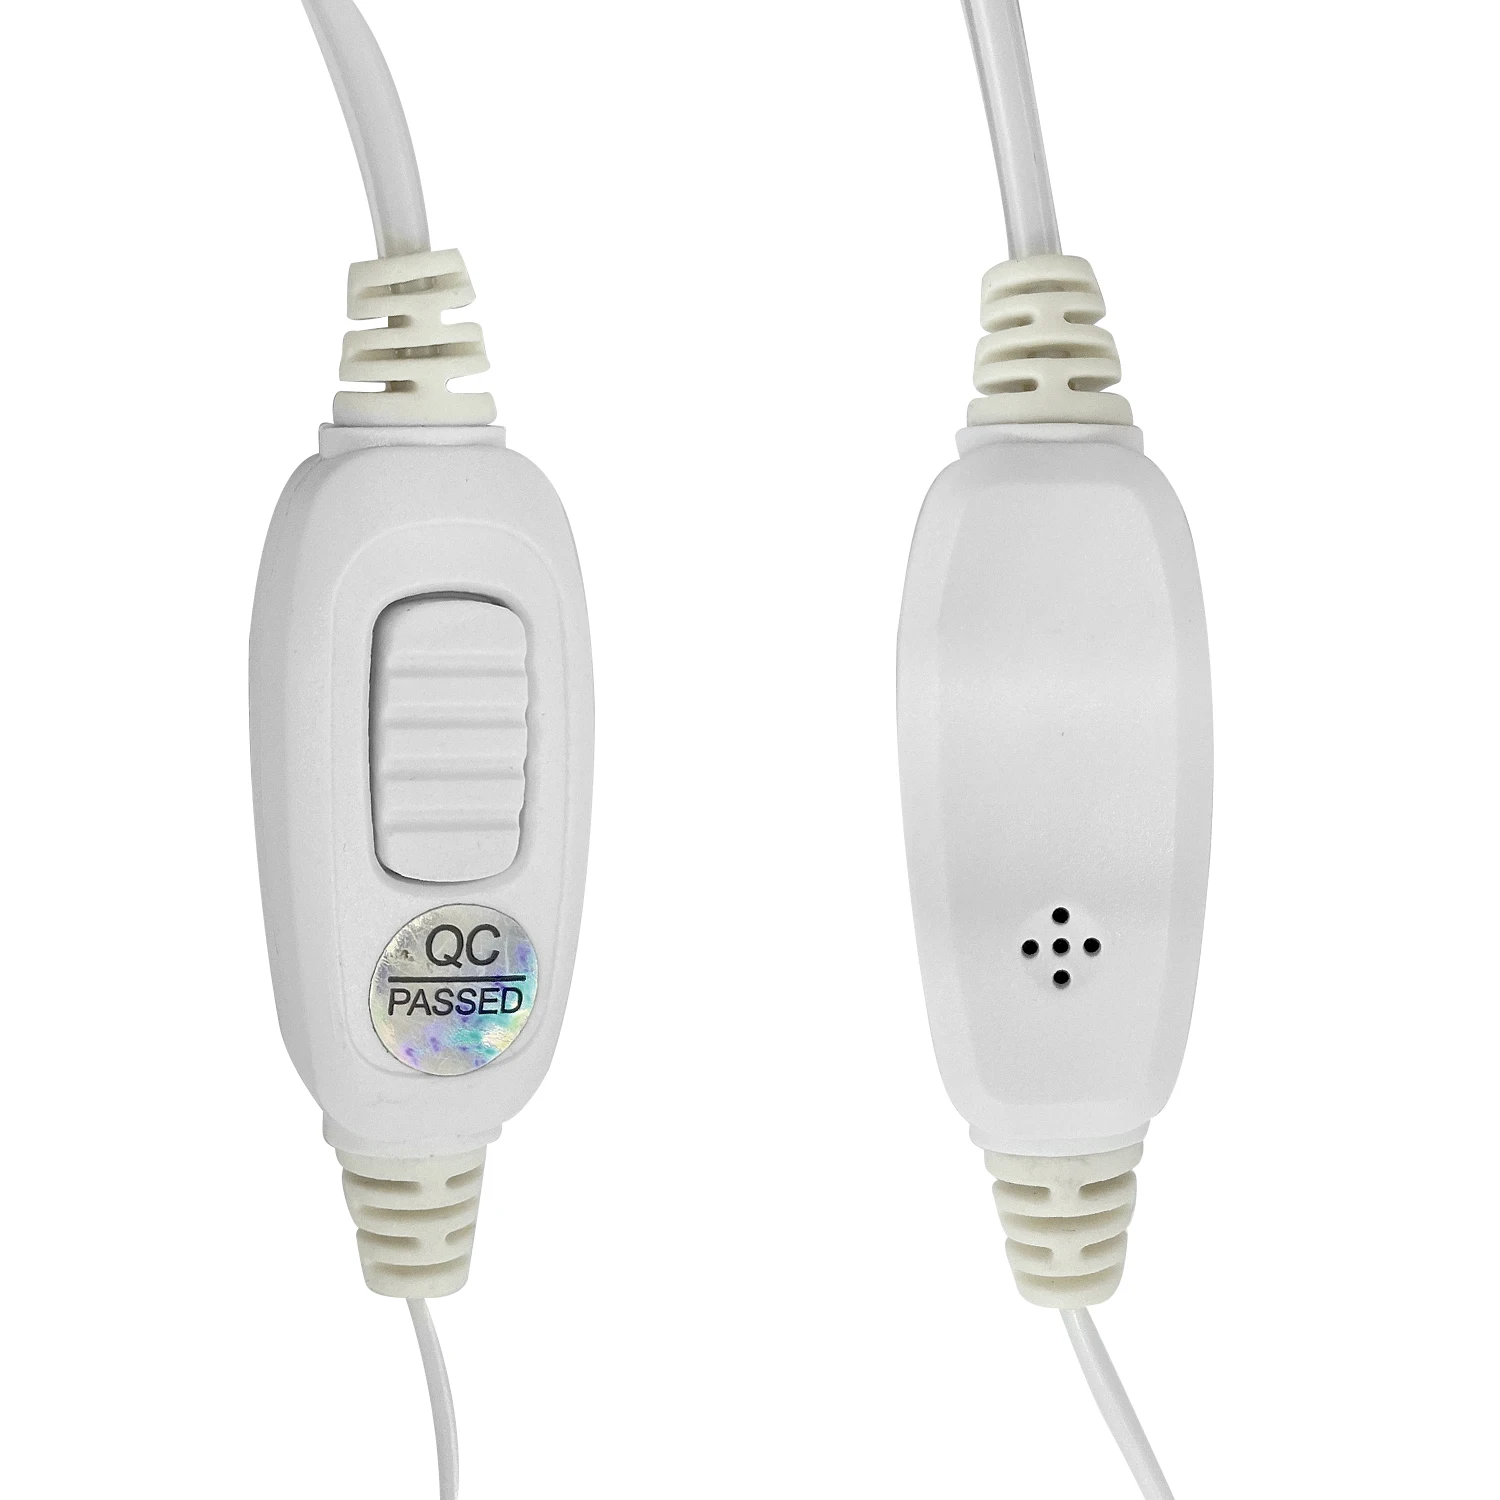 Type G ears hang walkie talkie headset Earpiece for baofeng BF-T3, BF-888S, BF-F8HP, BF-F9, BF-F9 V2+, RD-5 two way radios white enlarge